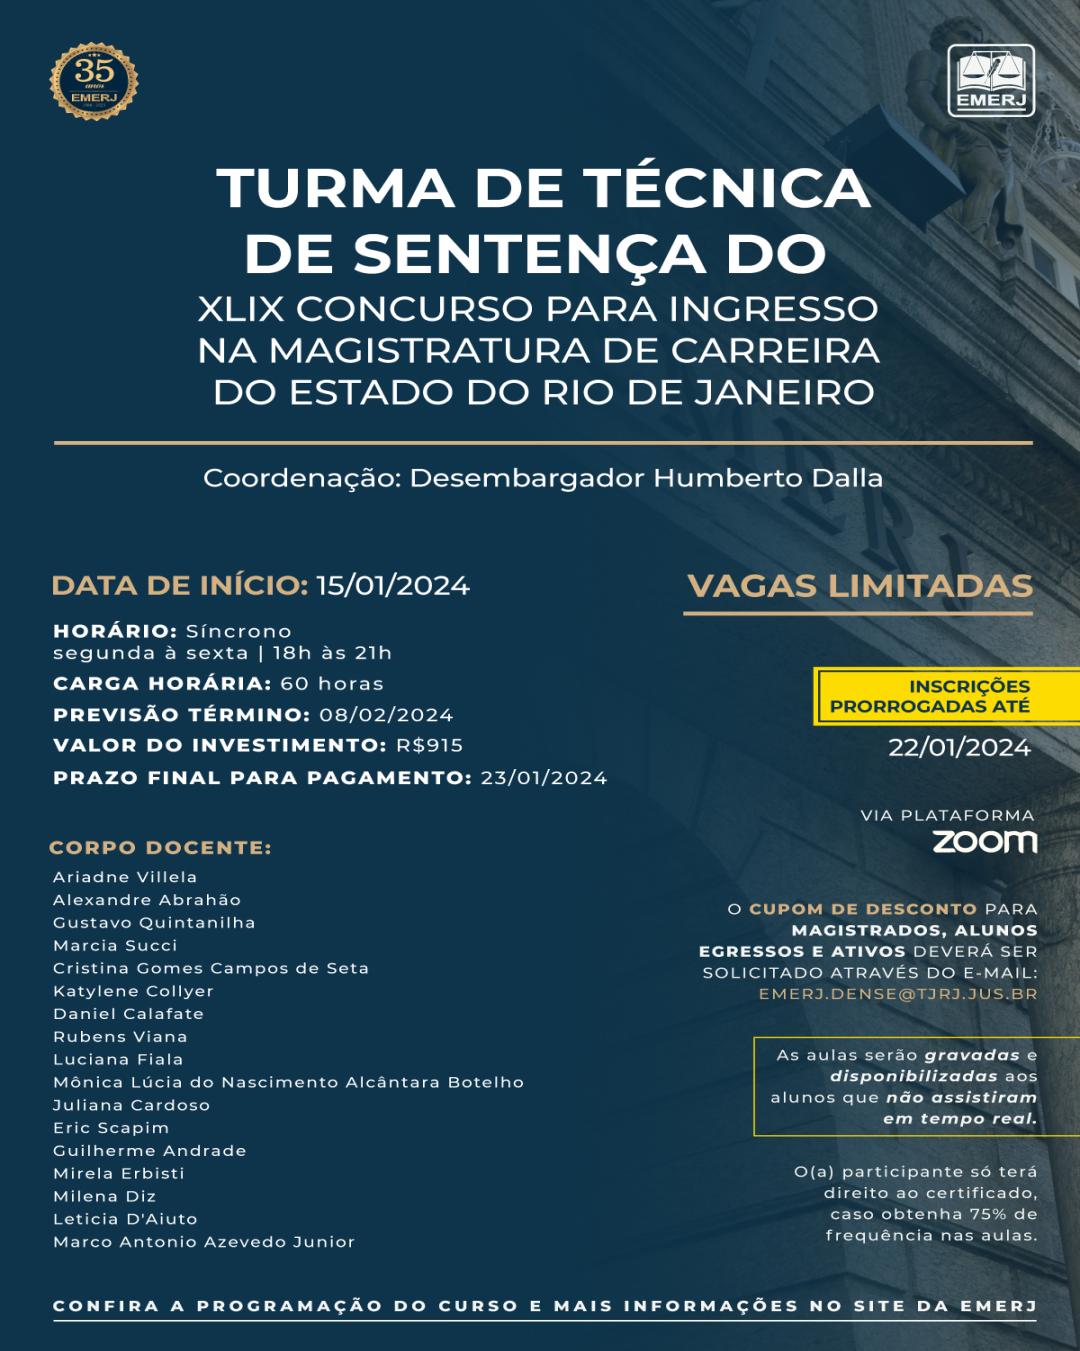 Imagem do banner principal do curso - TURMA DE TÉCNICA DE SENTENÇA DO XLIX CONCURSO PARA INGRESSO NA MAGISTRATURA DE CARREIRA DO ESTADO DO RIO DE JANEIRO